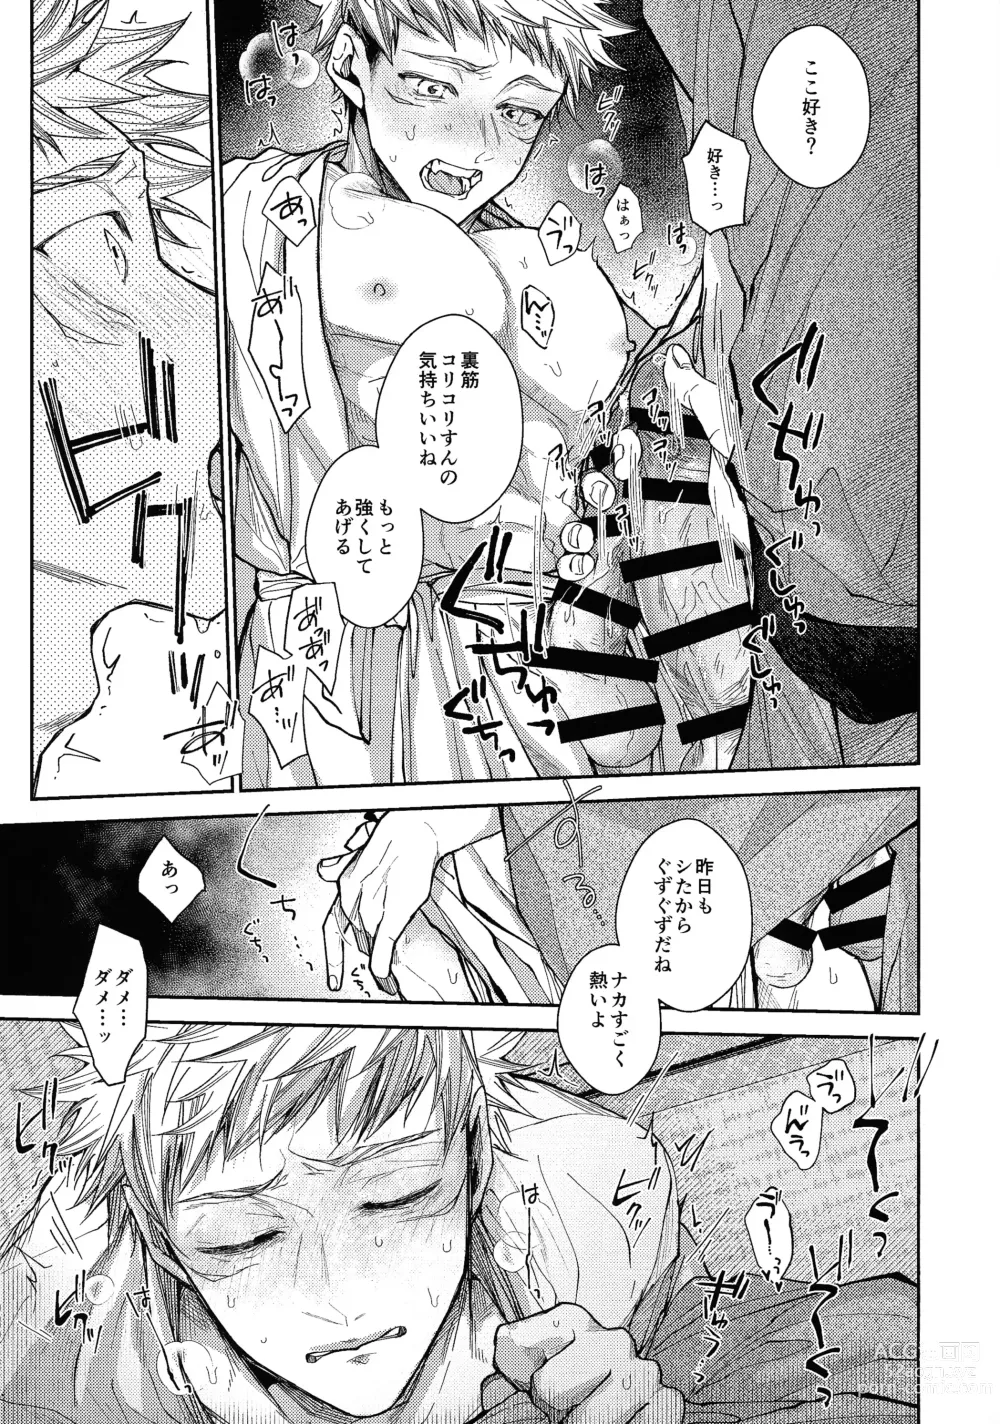 Page 12 of doujinshi Ningen Kakumei